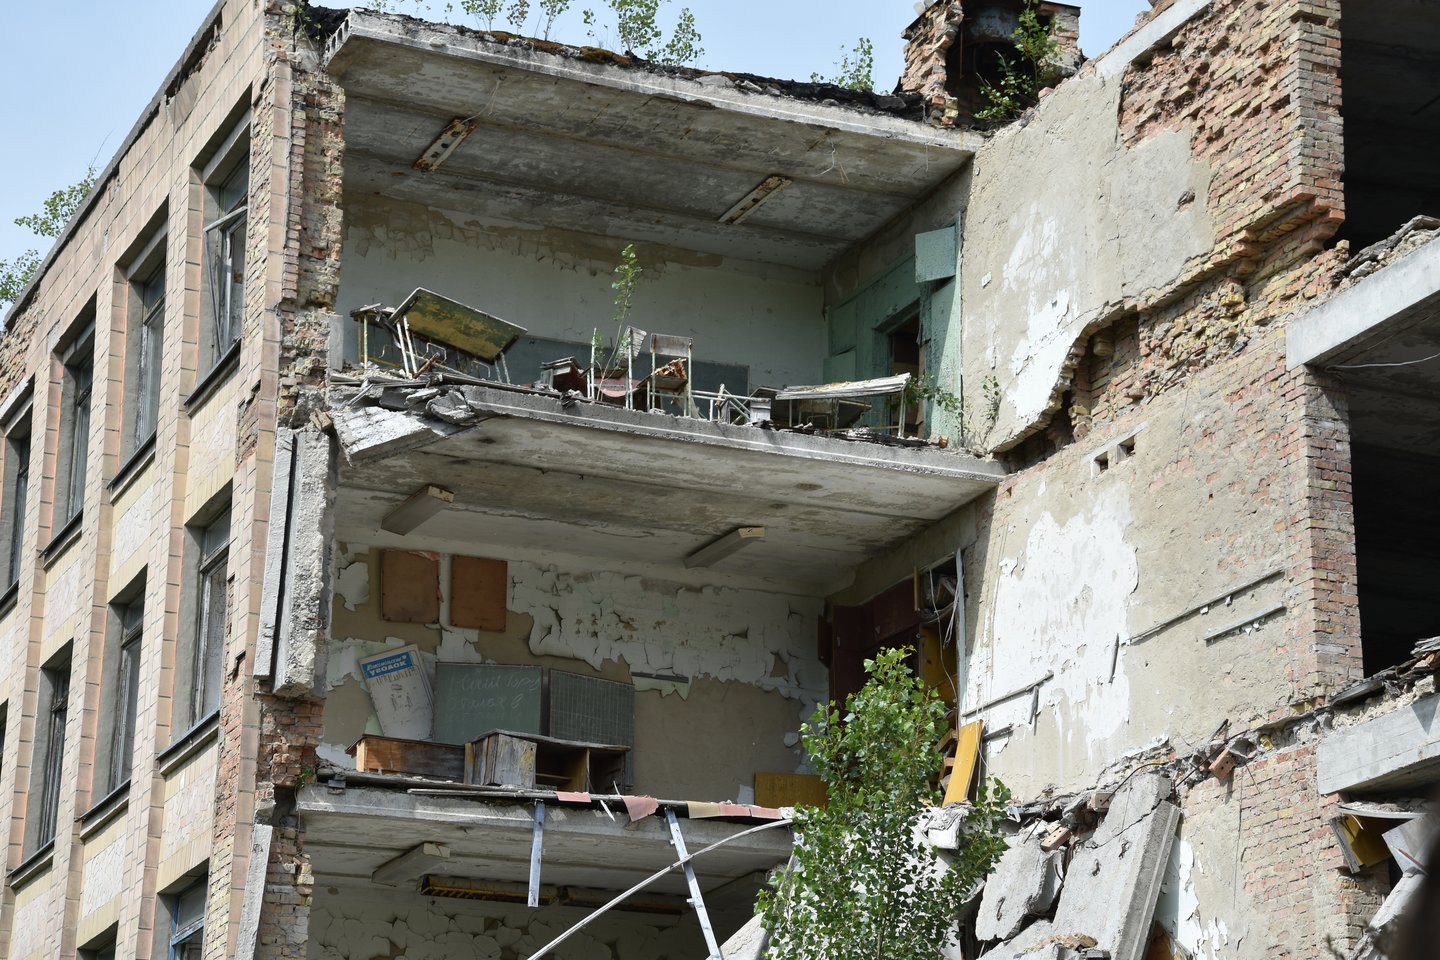  Vaizdai iš Černobylio zonos.<br>E.Grižibauskienės nuotr.